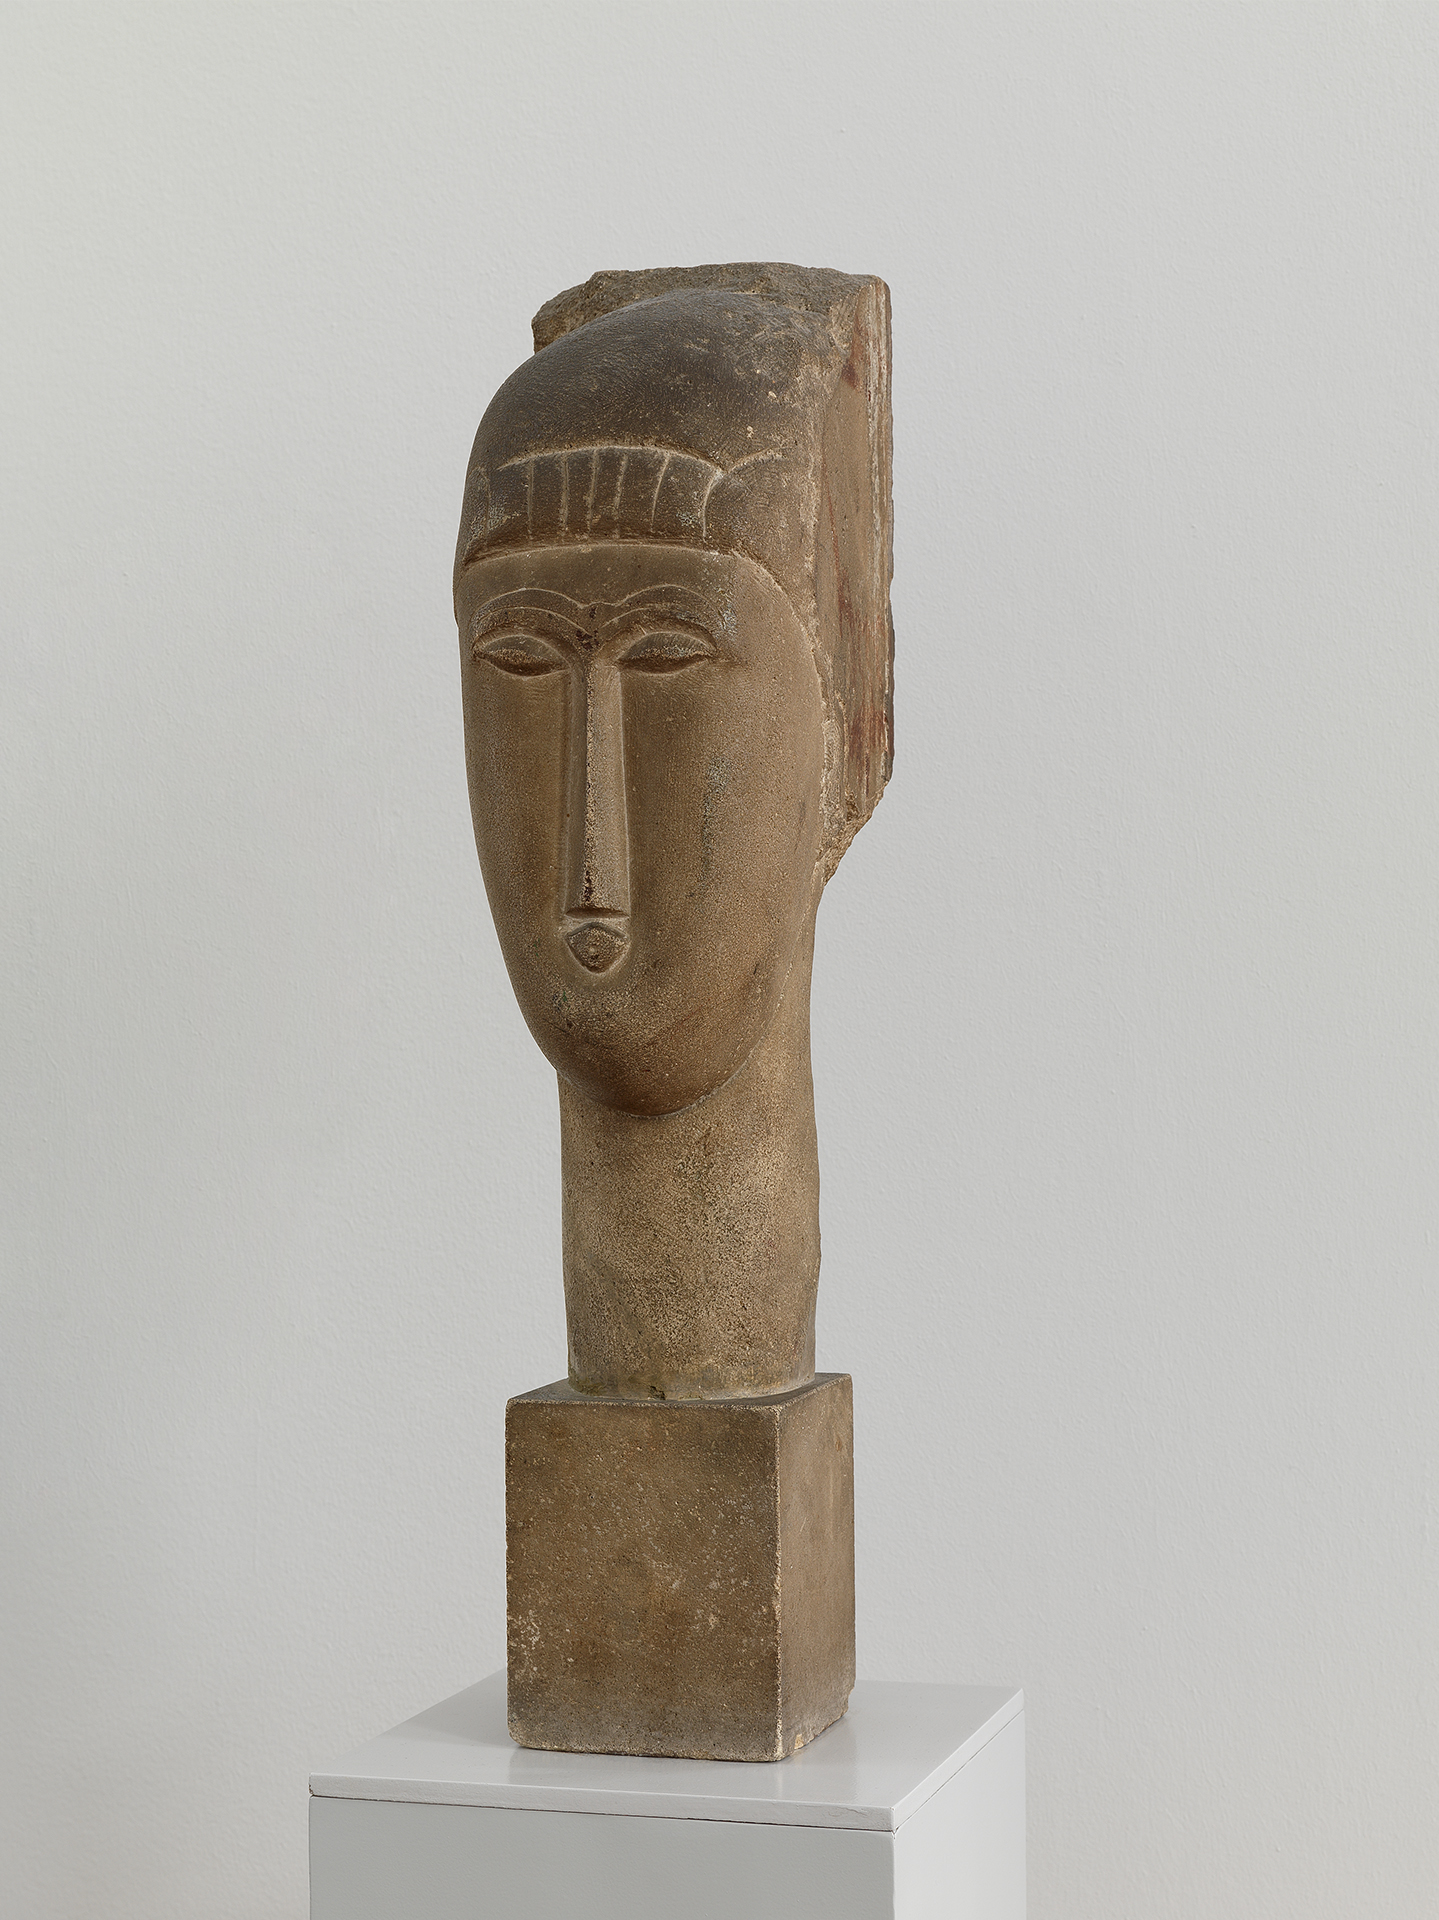 Abbildung einer Skulptur, die einen Kopf zeigt.